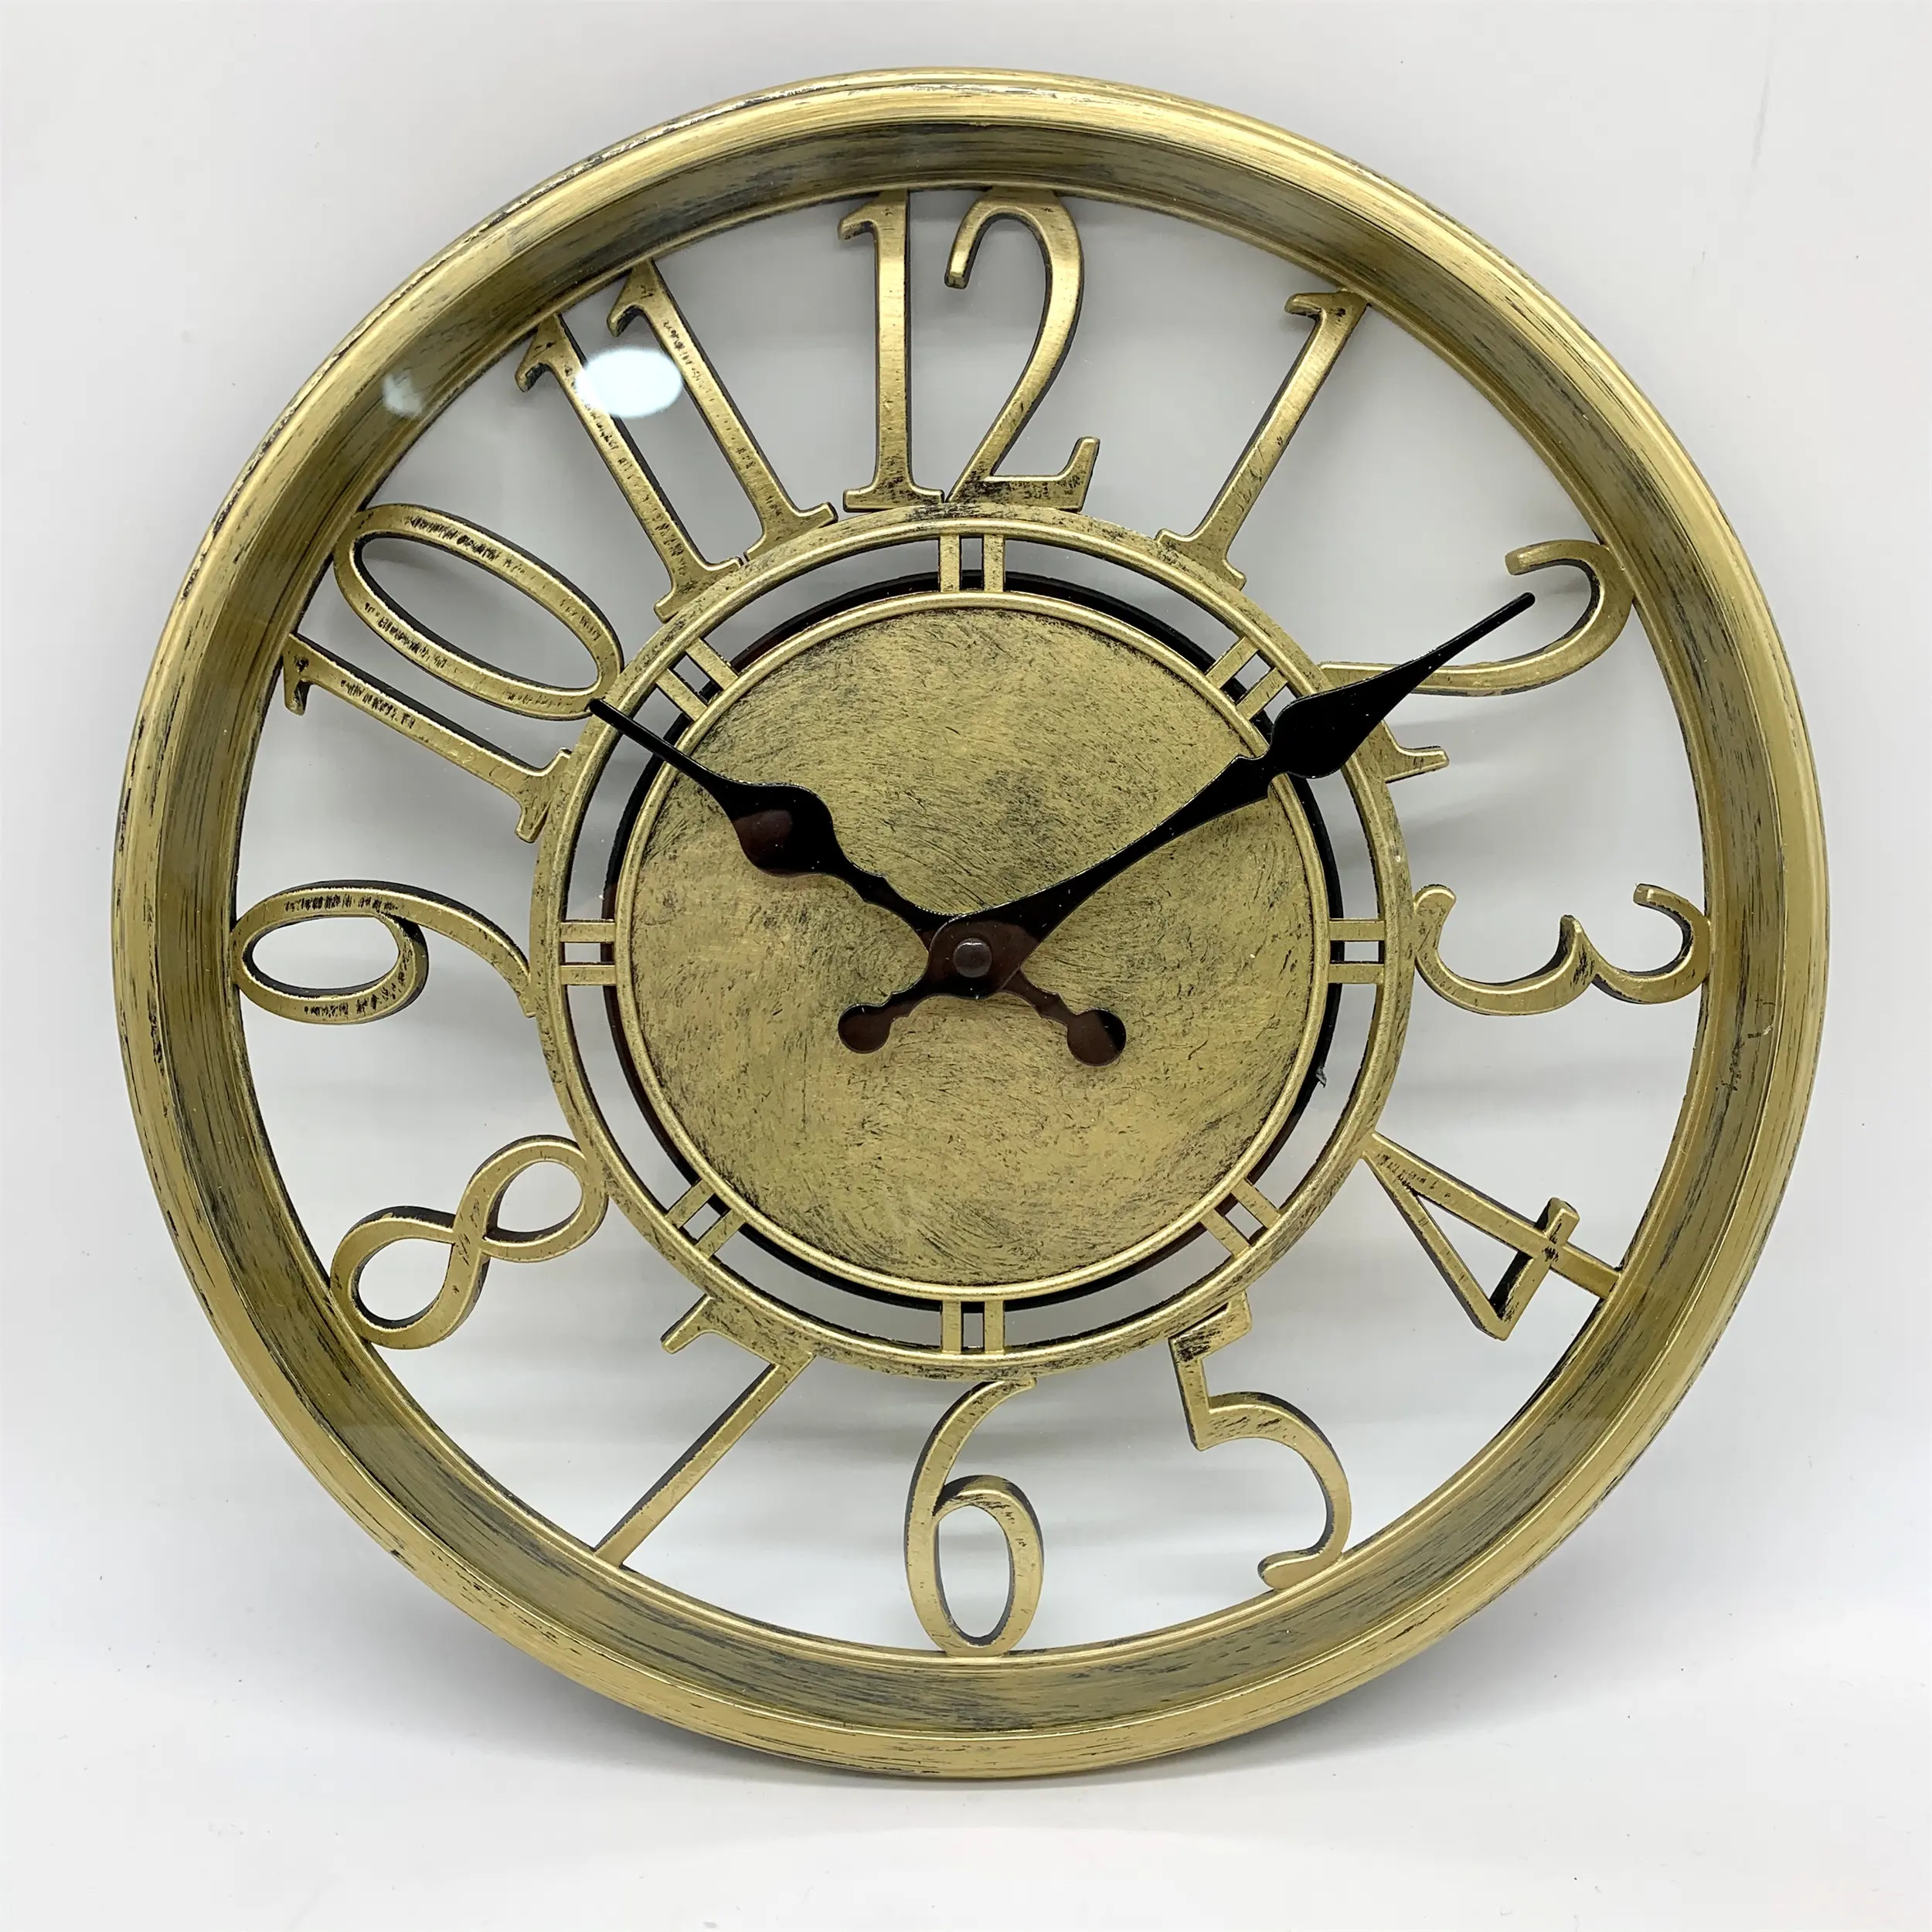 12 pollici nuovi orologi da parete al quarzo più economici per la decorazione domestica orologio da parete Vintage a sublimazione del fornitore della fabbrica Zhangzhou